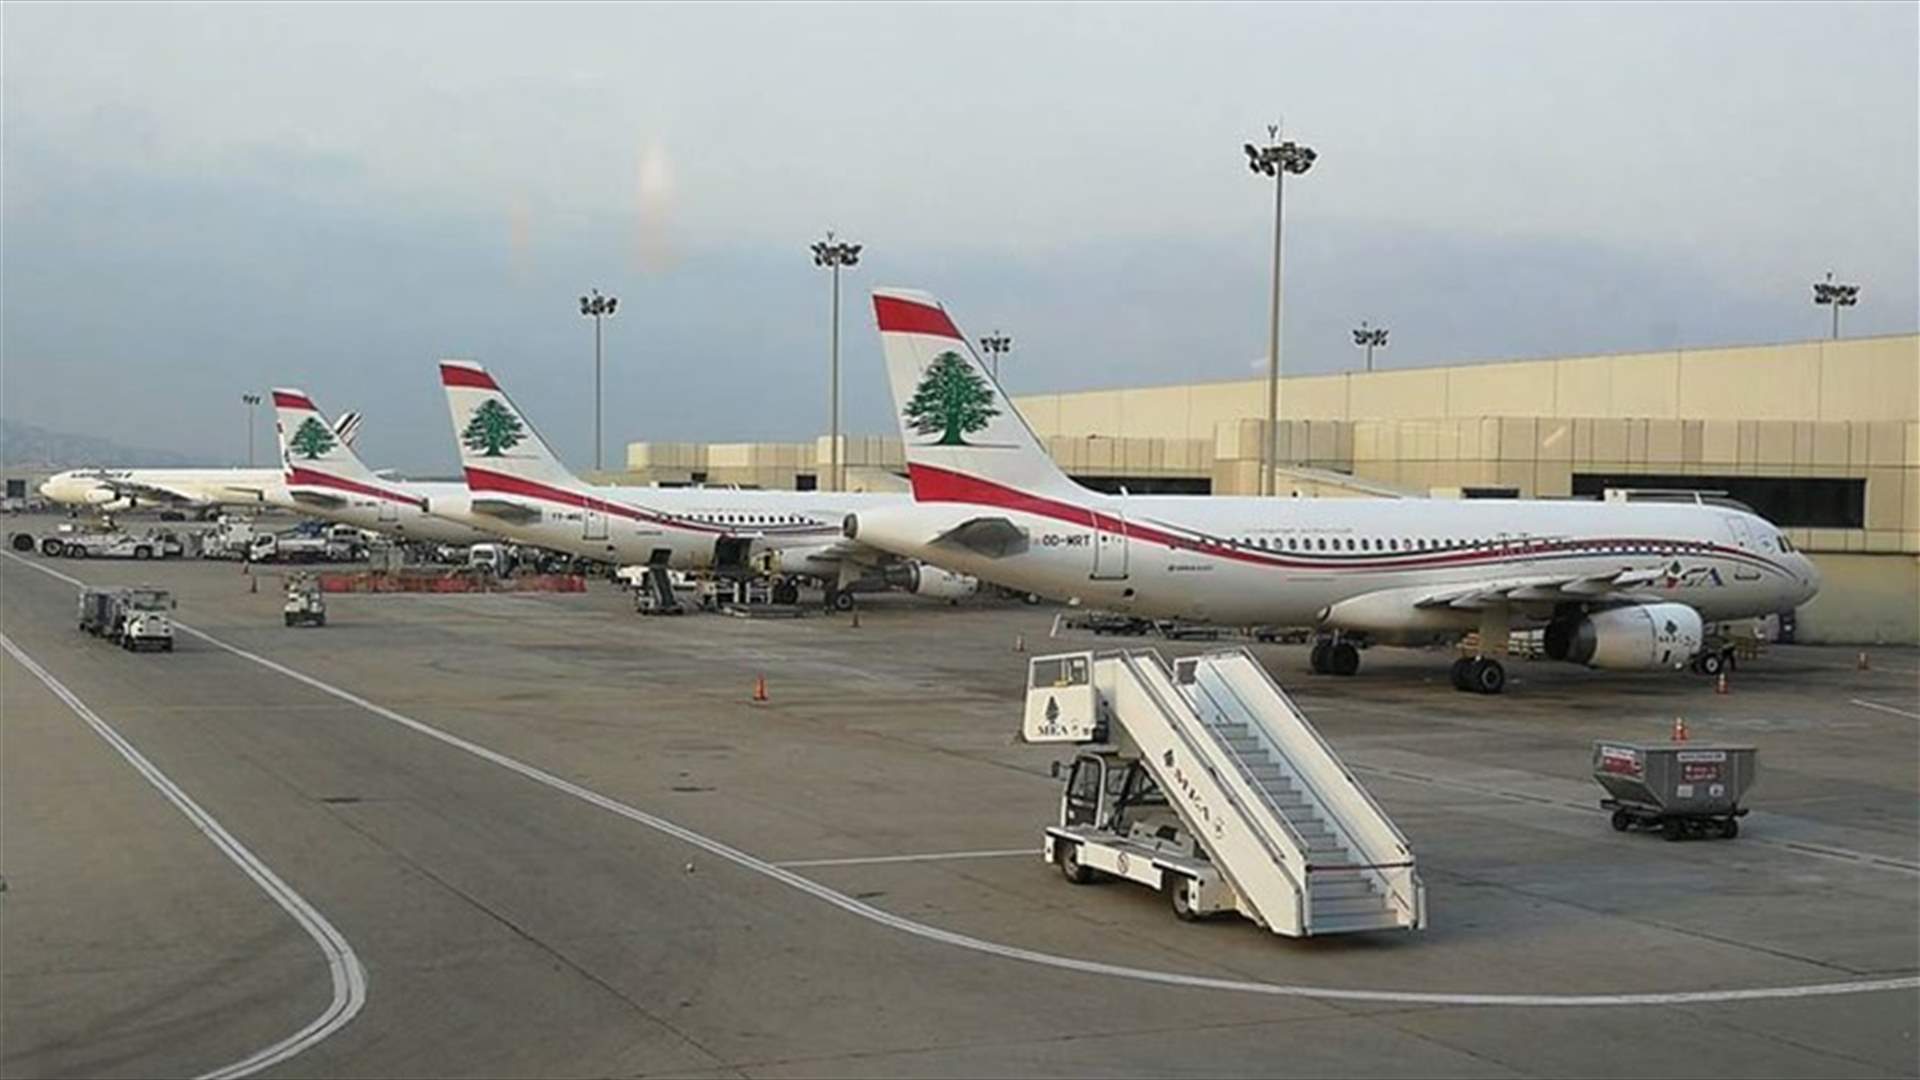 وصول طائرة إيرانية ثانية إلى المطار... وإجراءات احترازية ووقائية للكشف على ركابها